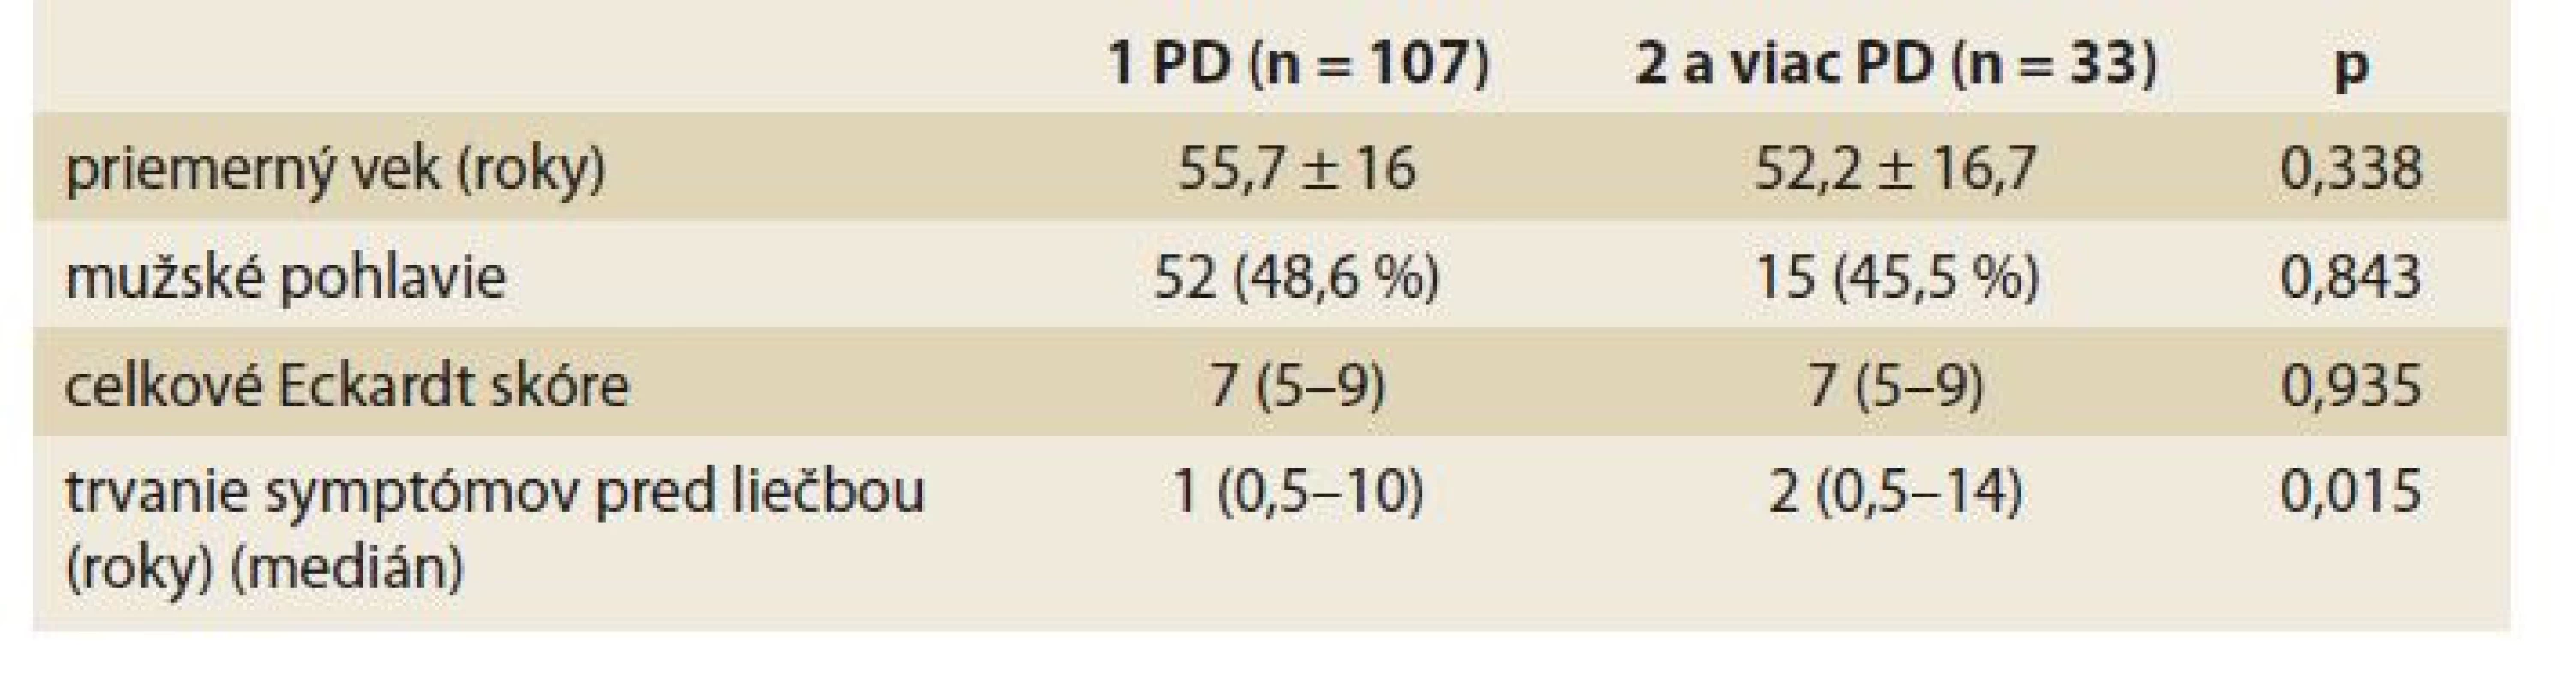 Rozdielnosť klinických ukazovateľov v súvislosti s počtom vykonaných
pneumatických dilatácii (PD).<br>
Tab. 3. Difference of clinical parameters in relation to the number of performed
pneumatic dilations (PD).